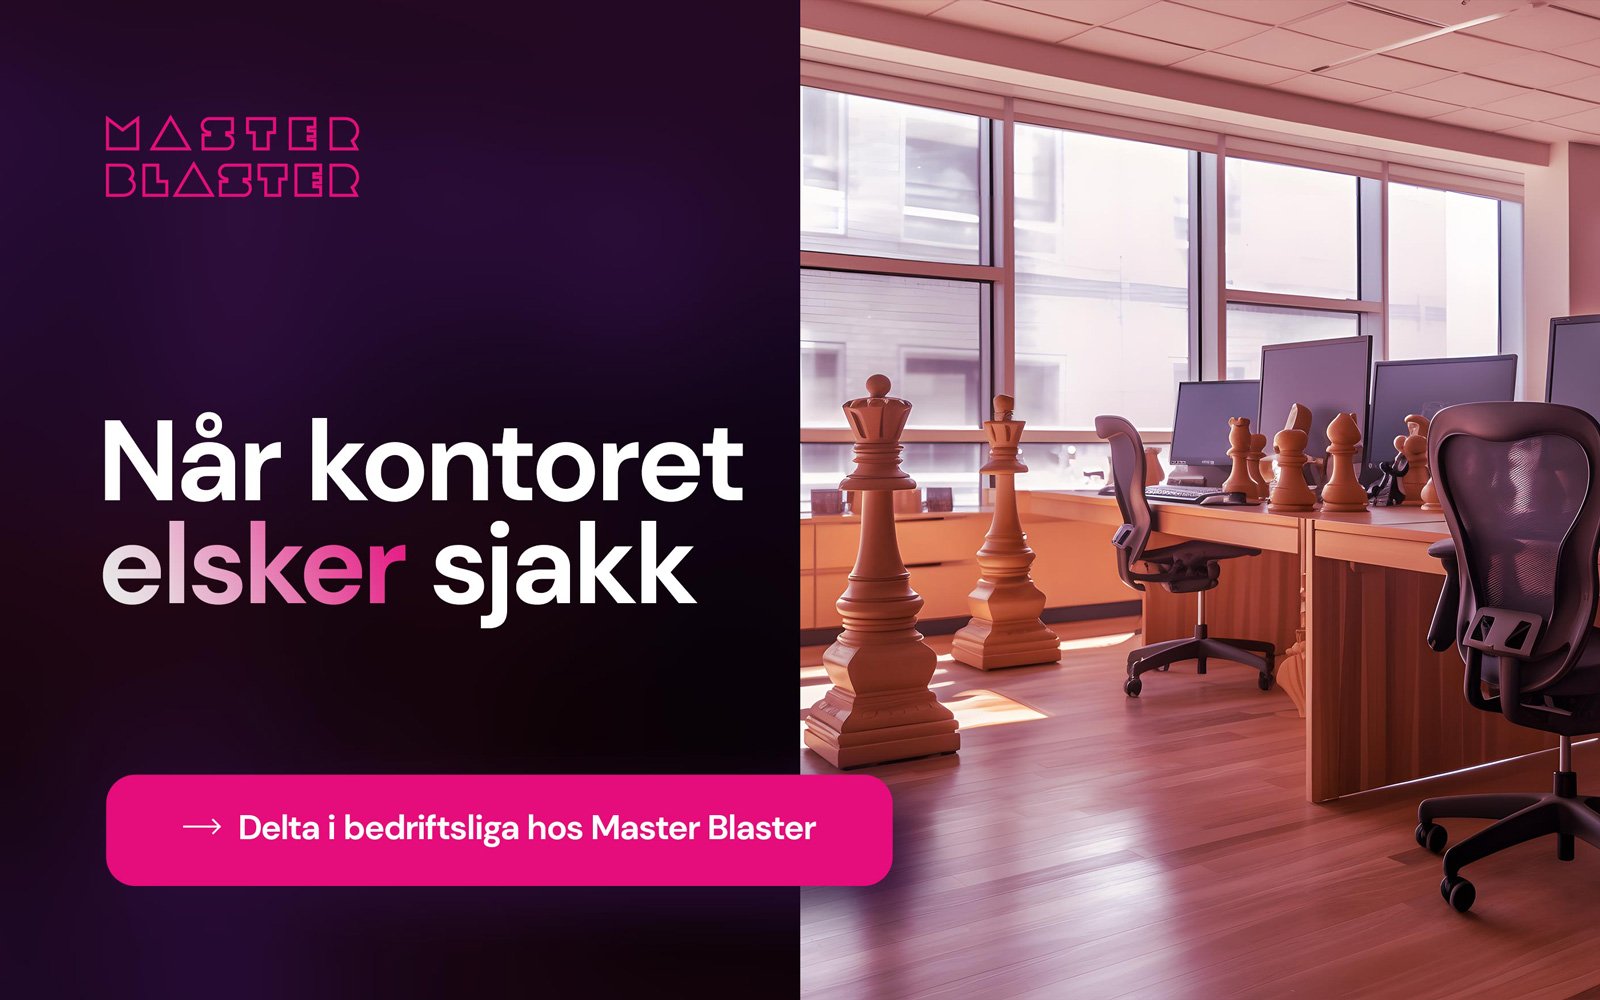 masterblaster-banner-sjakk-01-16x10